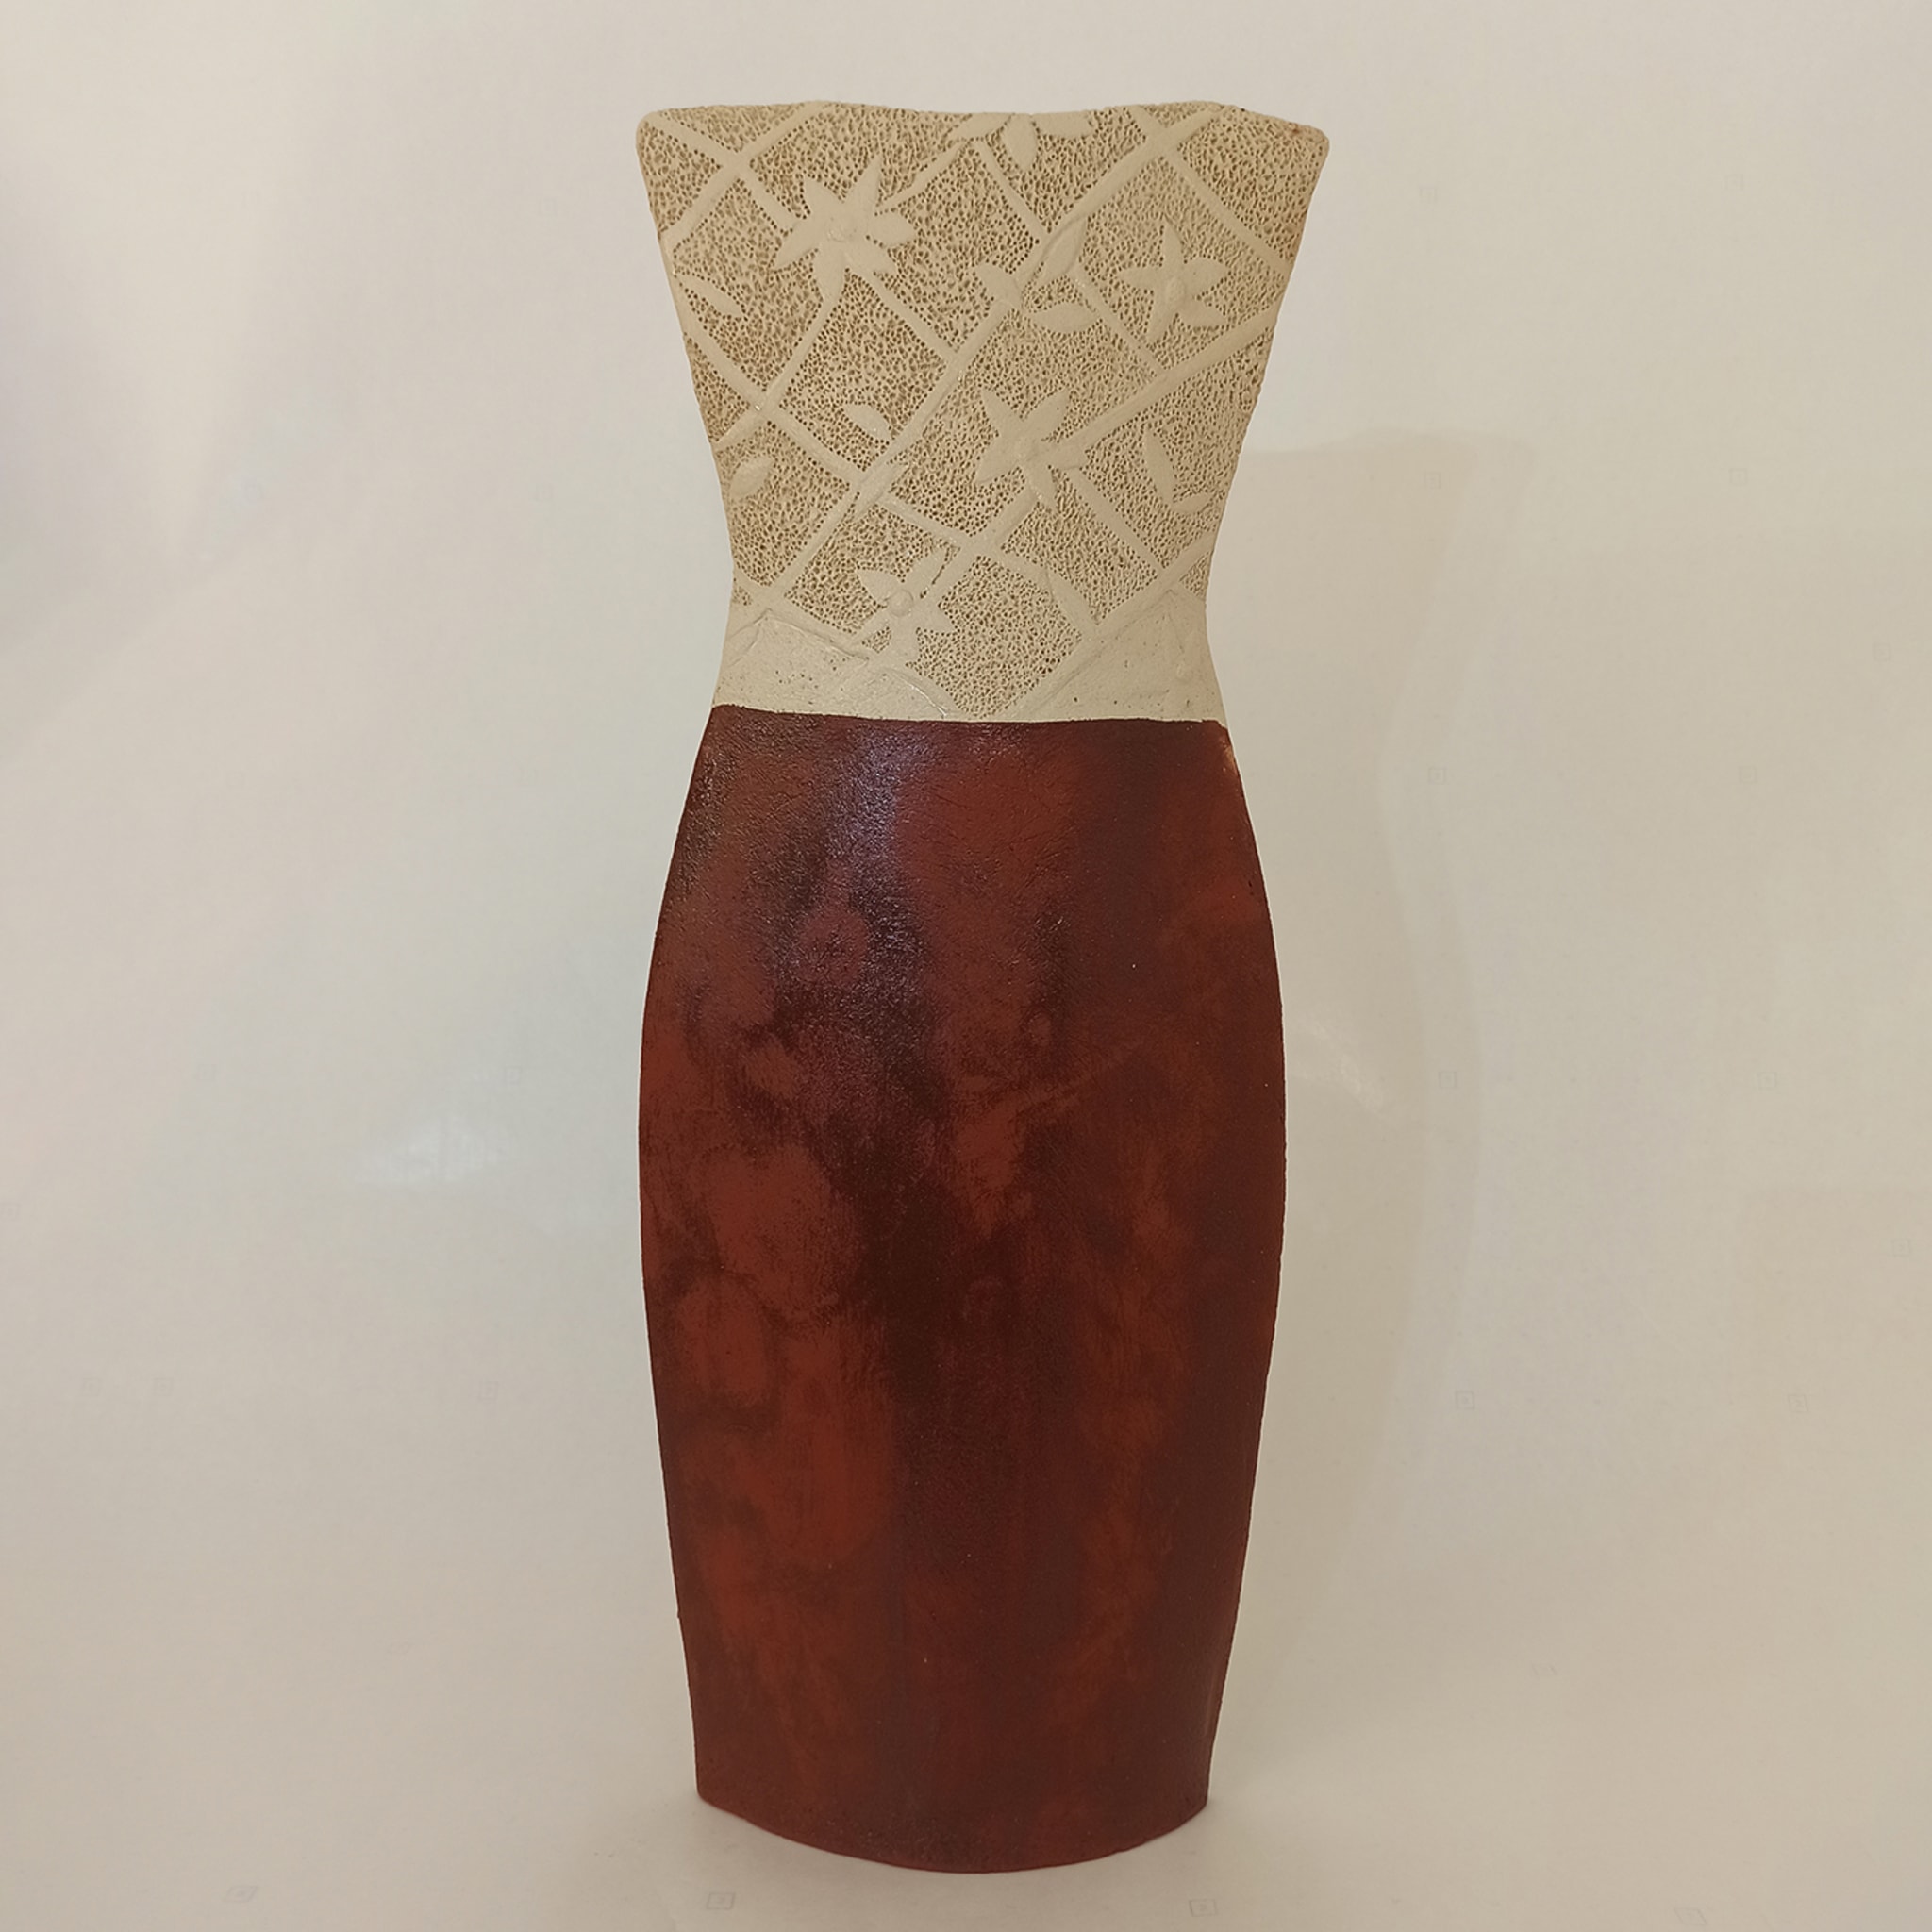 Vestito Rosso Dress-Shaped Sculpture - Alternative view 2